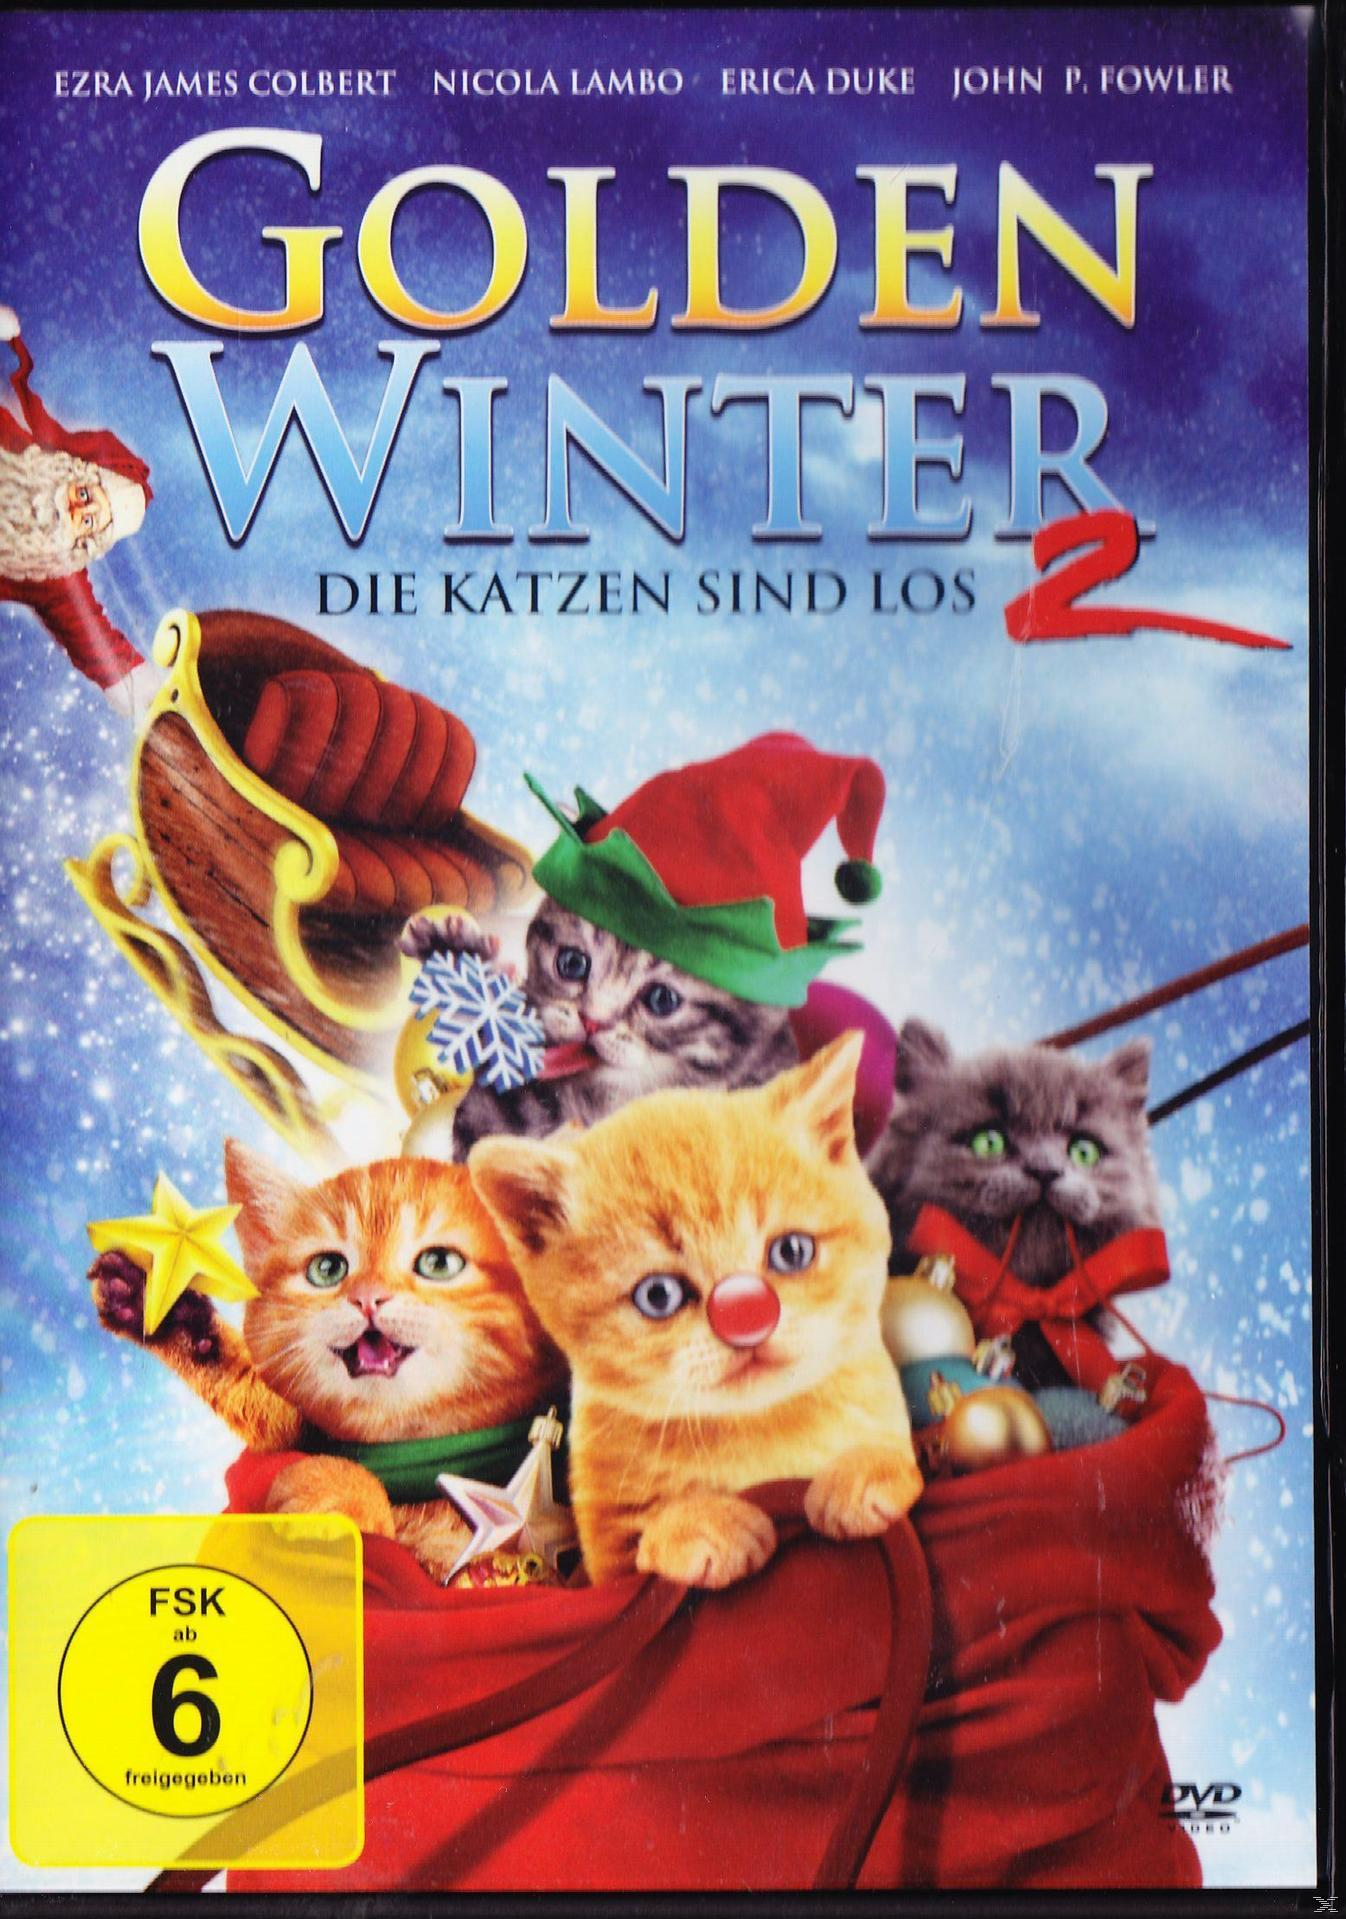 Golden Winter 2 - Katzen sind Die DVD los